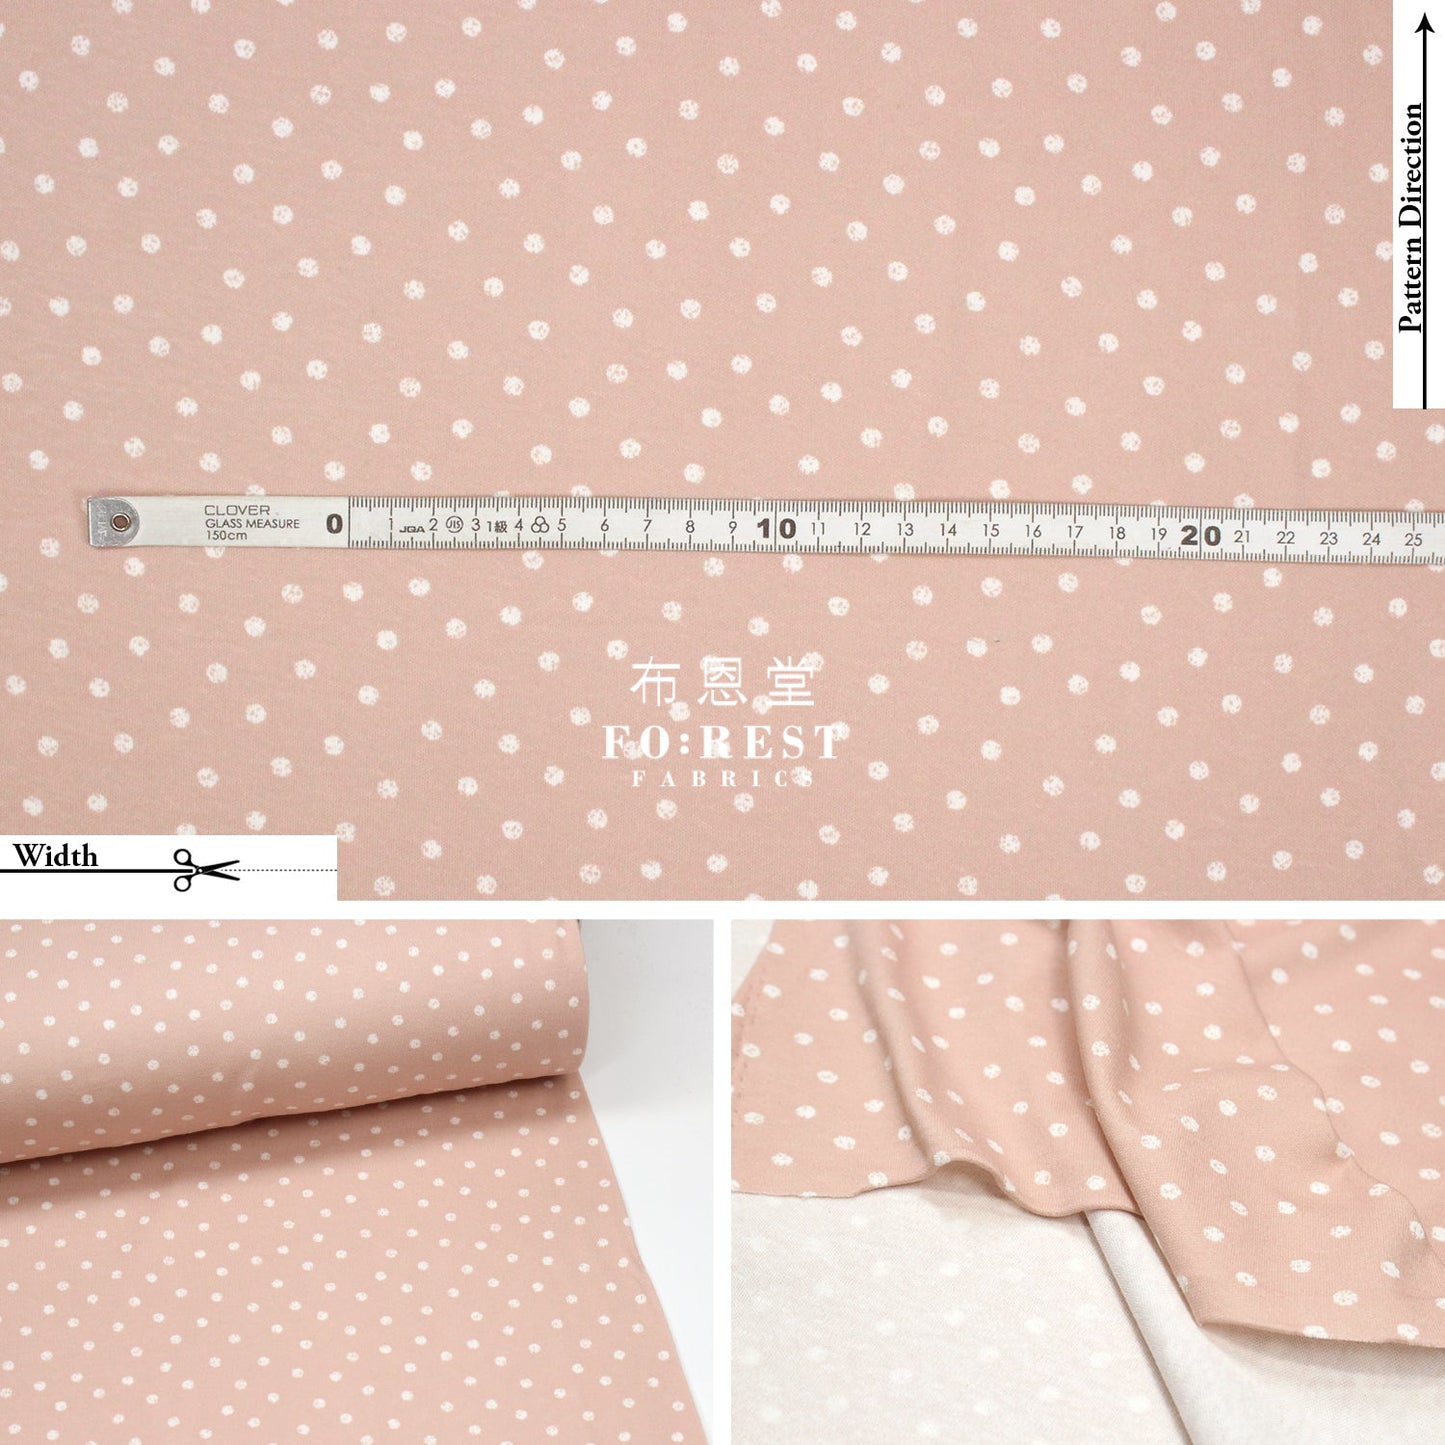 Cotton Jersey Knit - Dot Fabric 針織